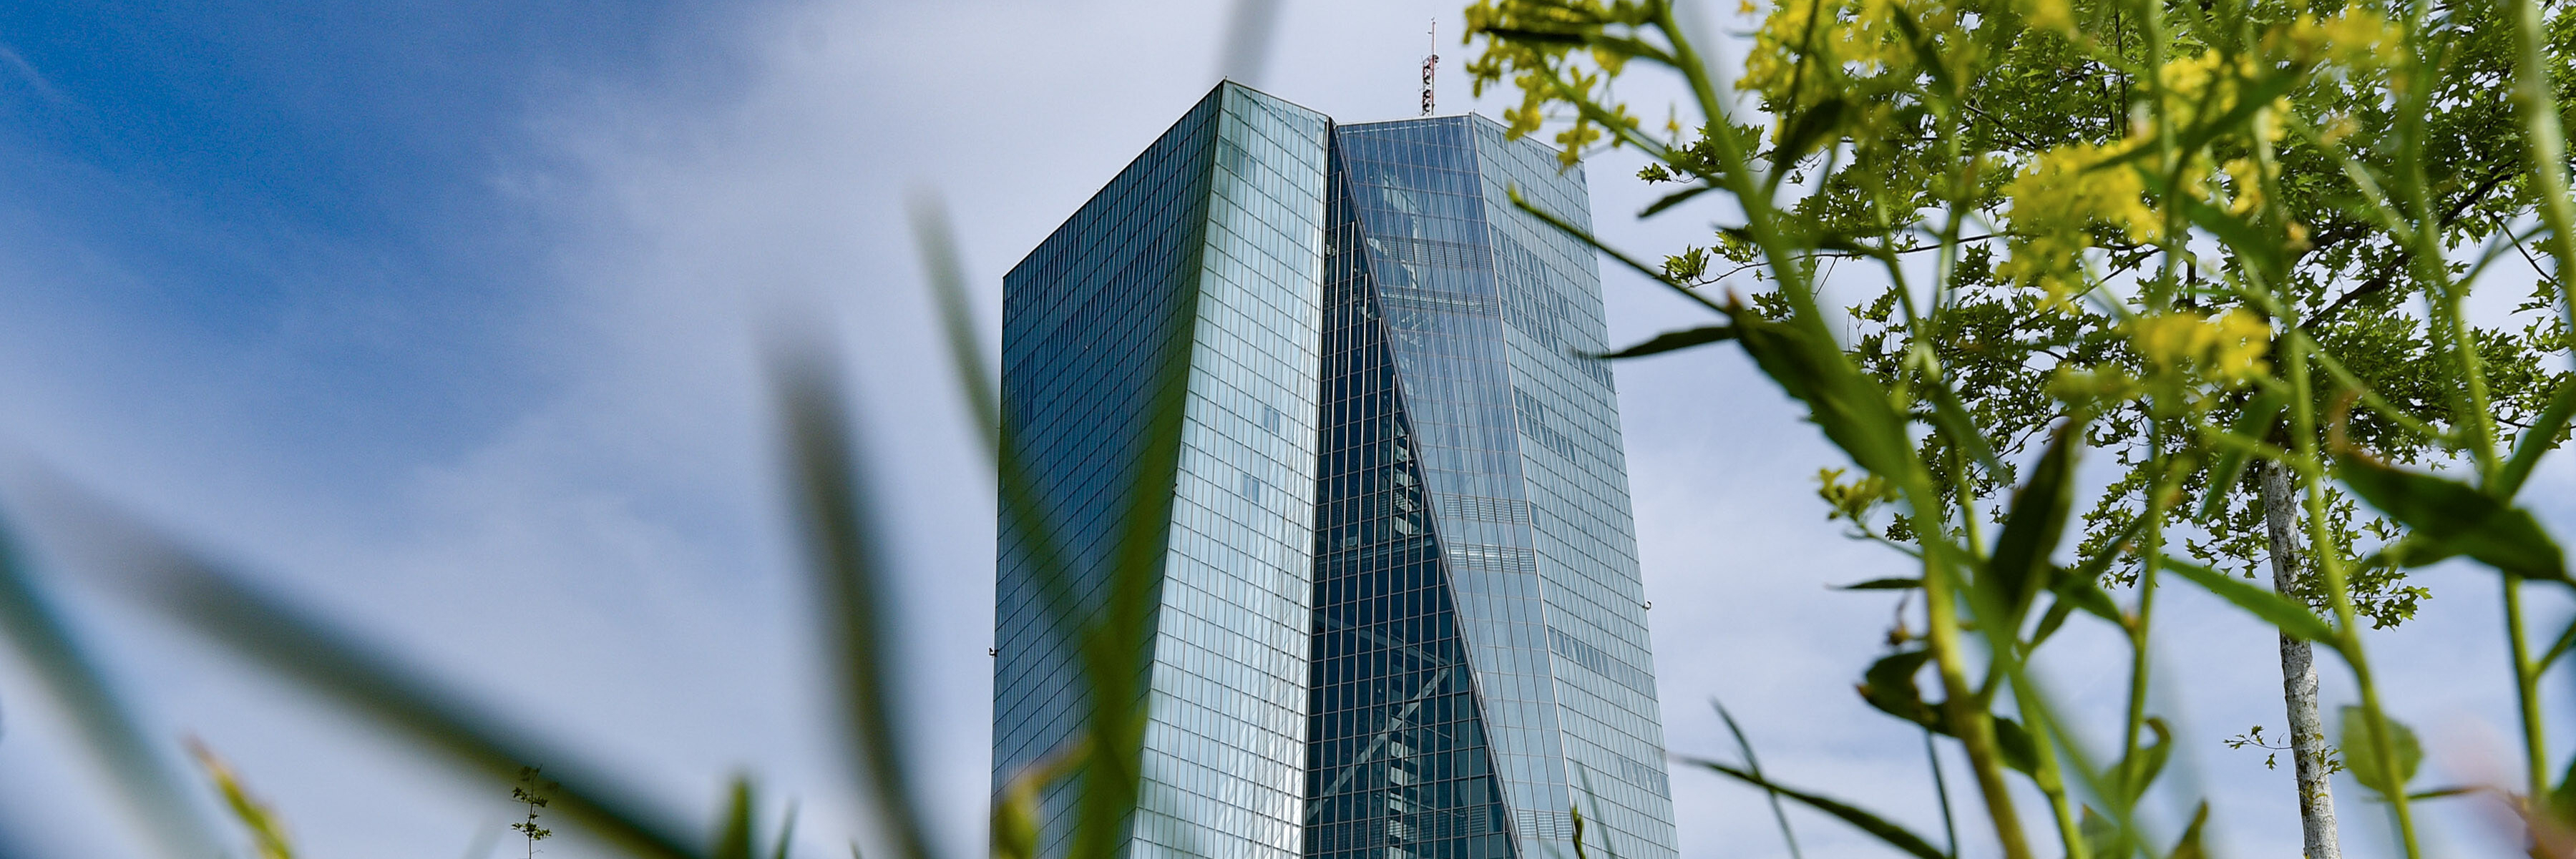 Hochhaus der Europäischen Zentralbank, im Vordergrund Grashalme und ein Baum